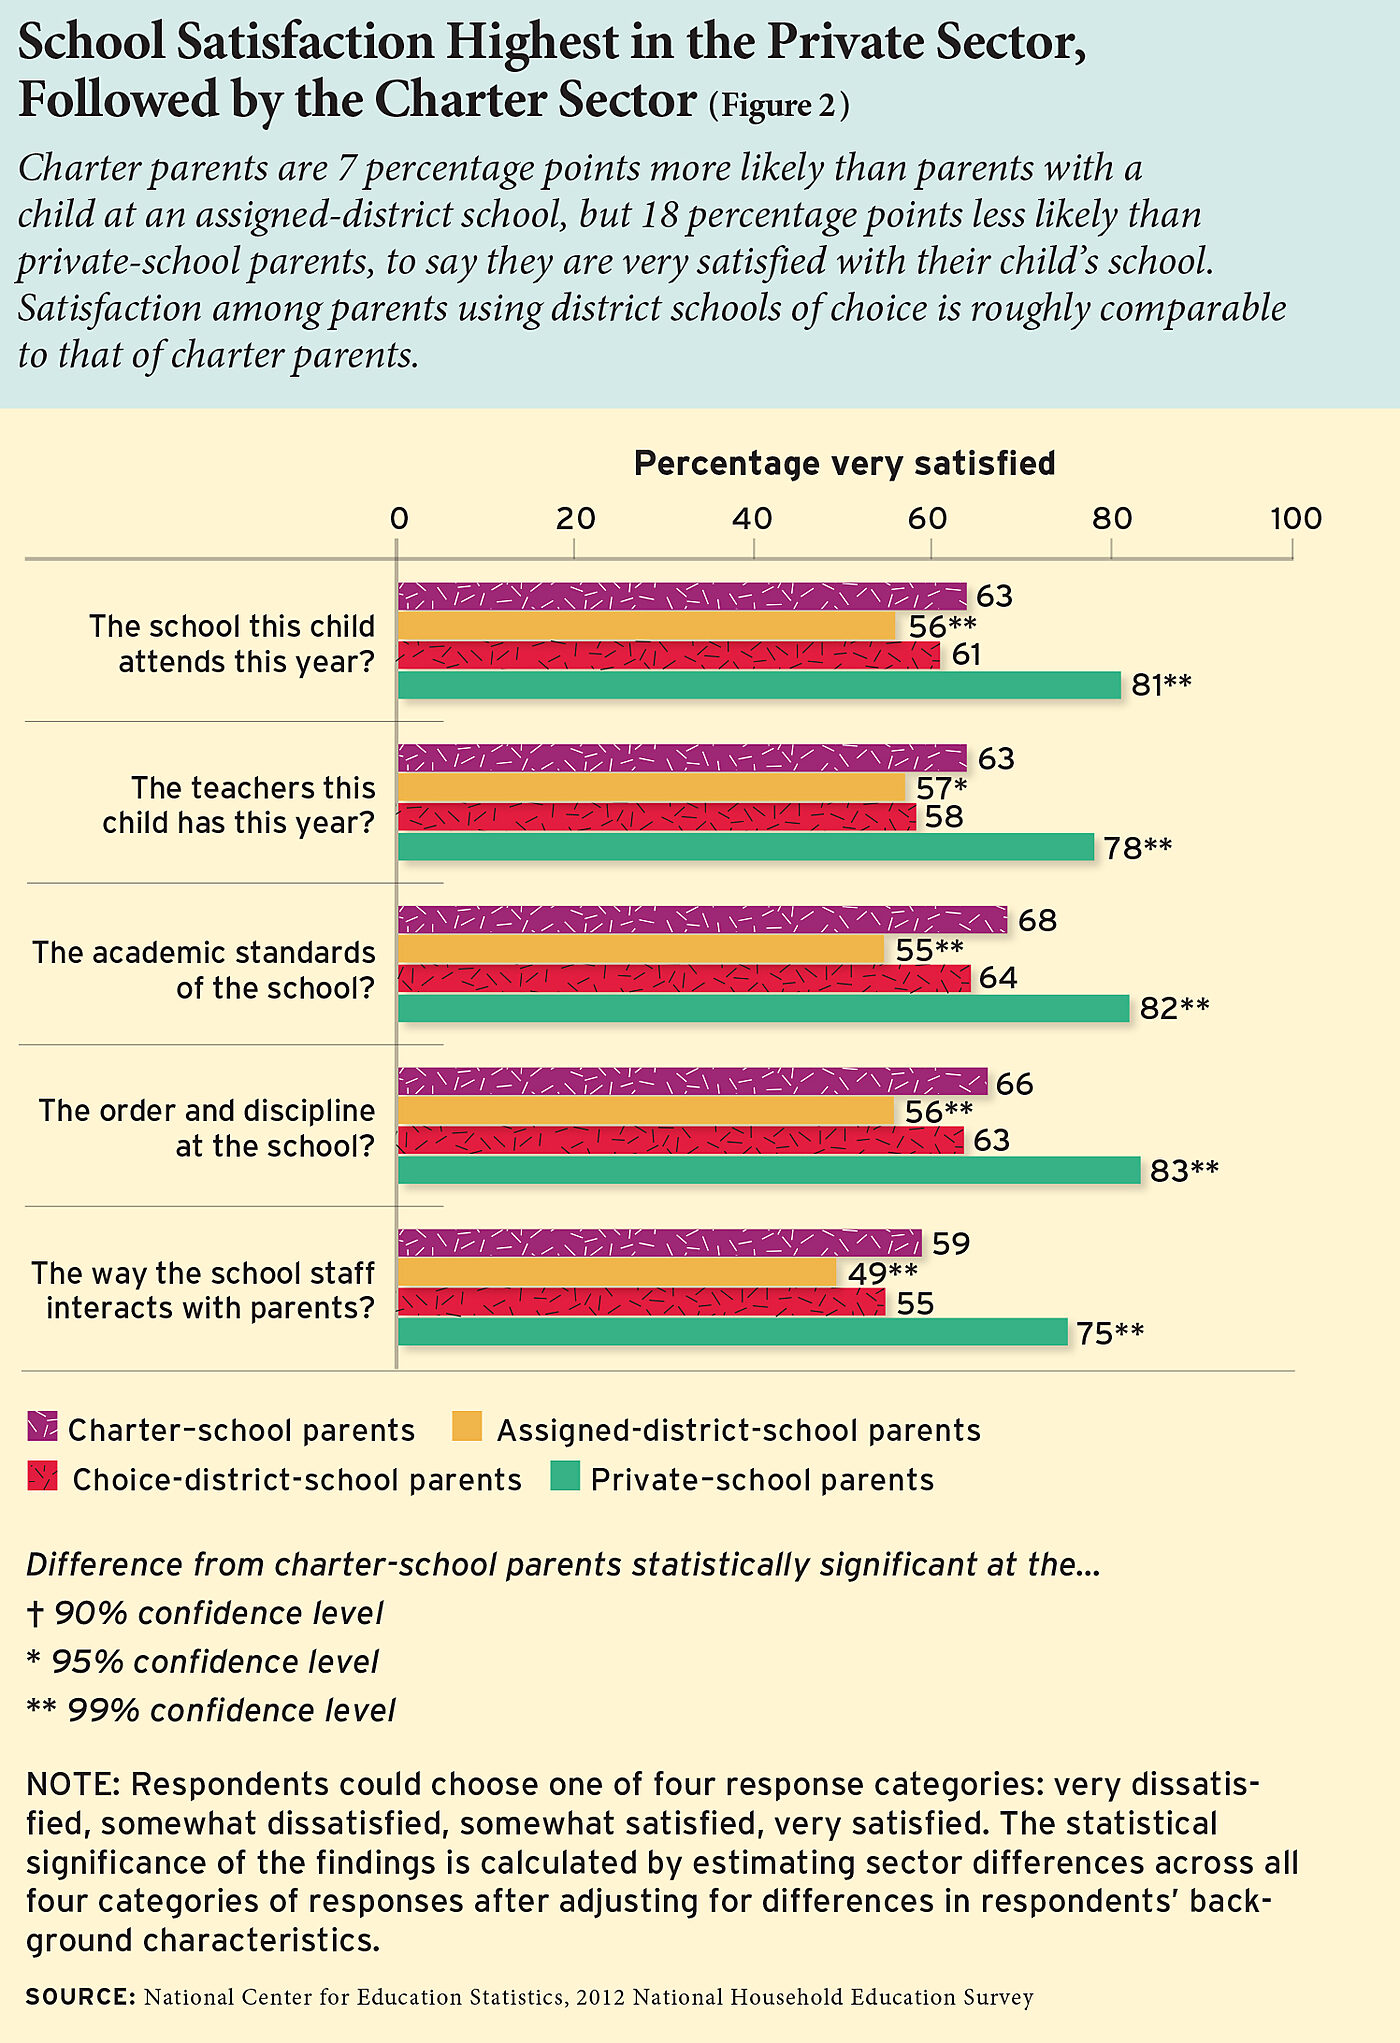 Parental satisfaction across schooling sectors (DOE)